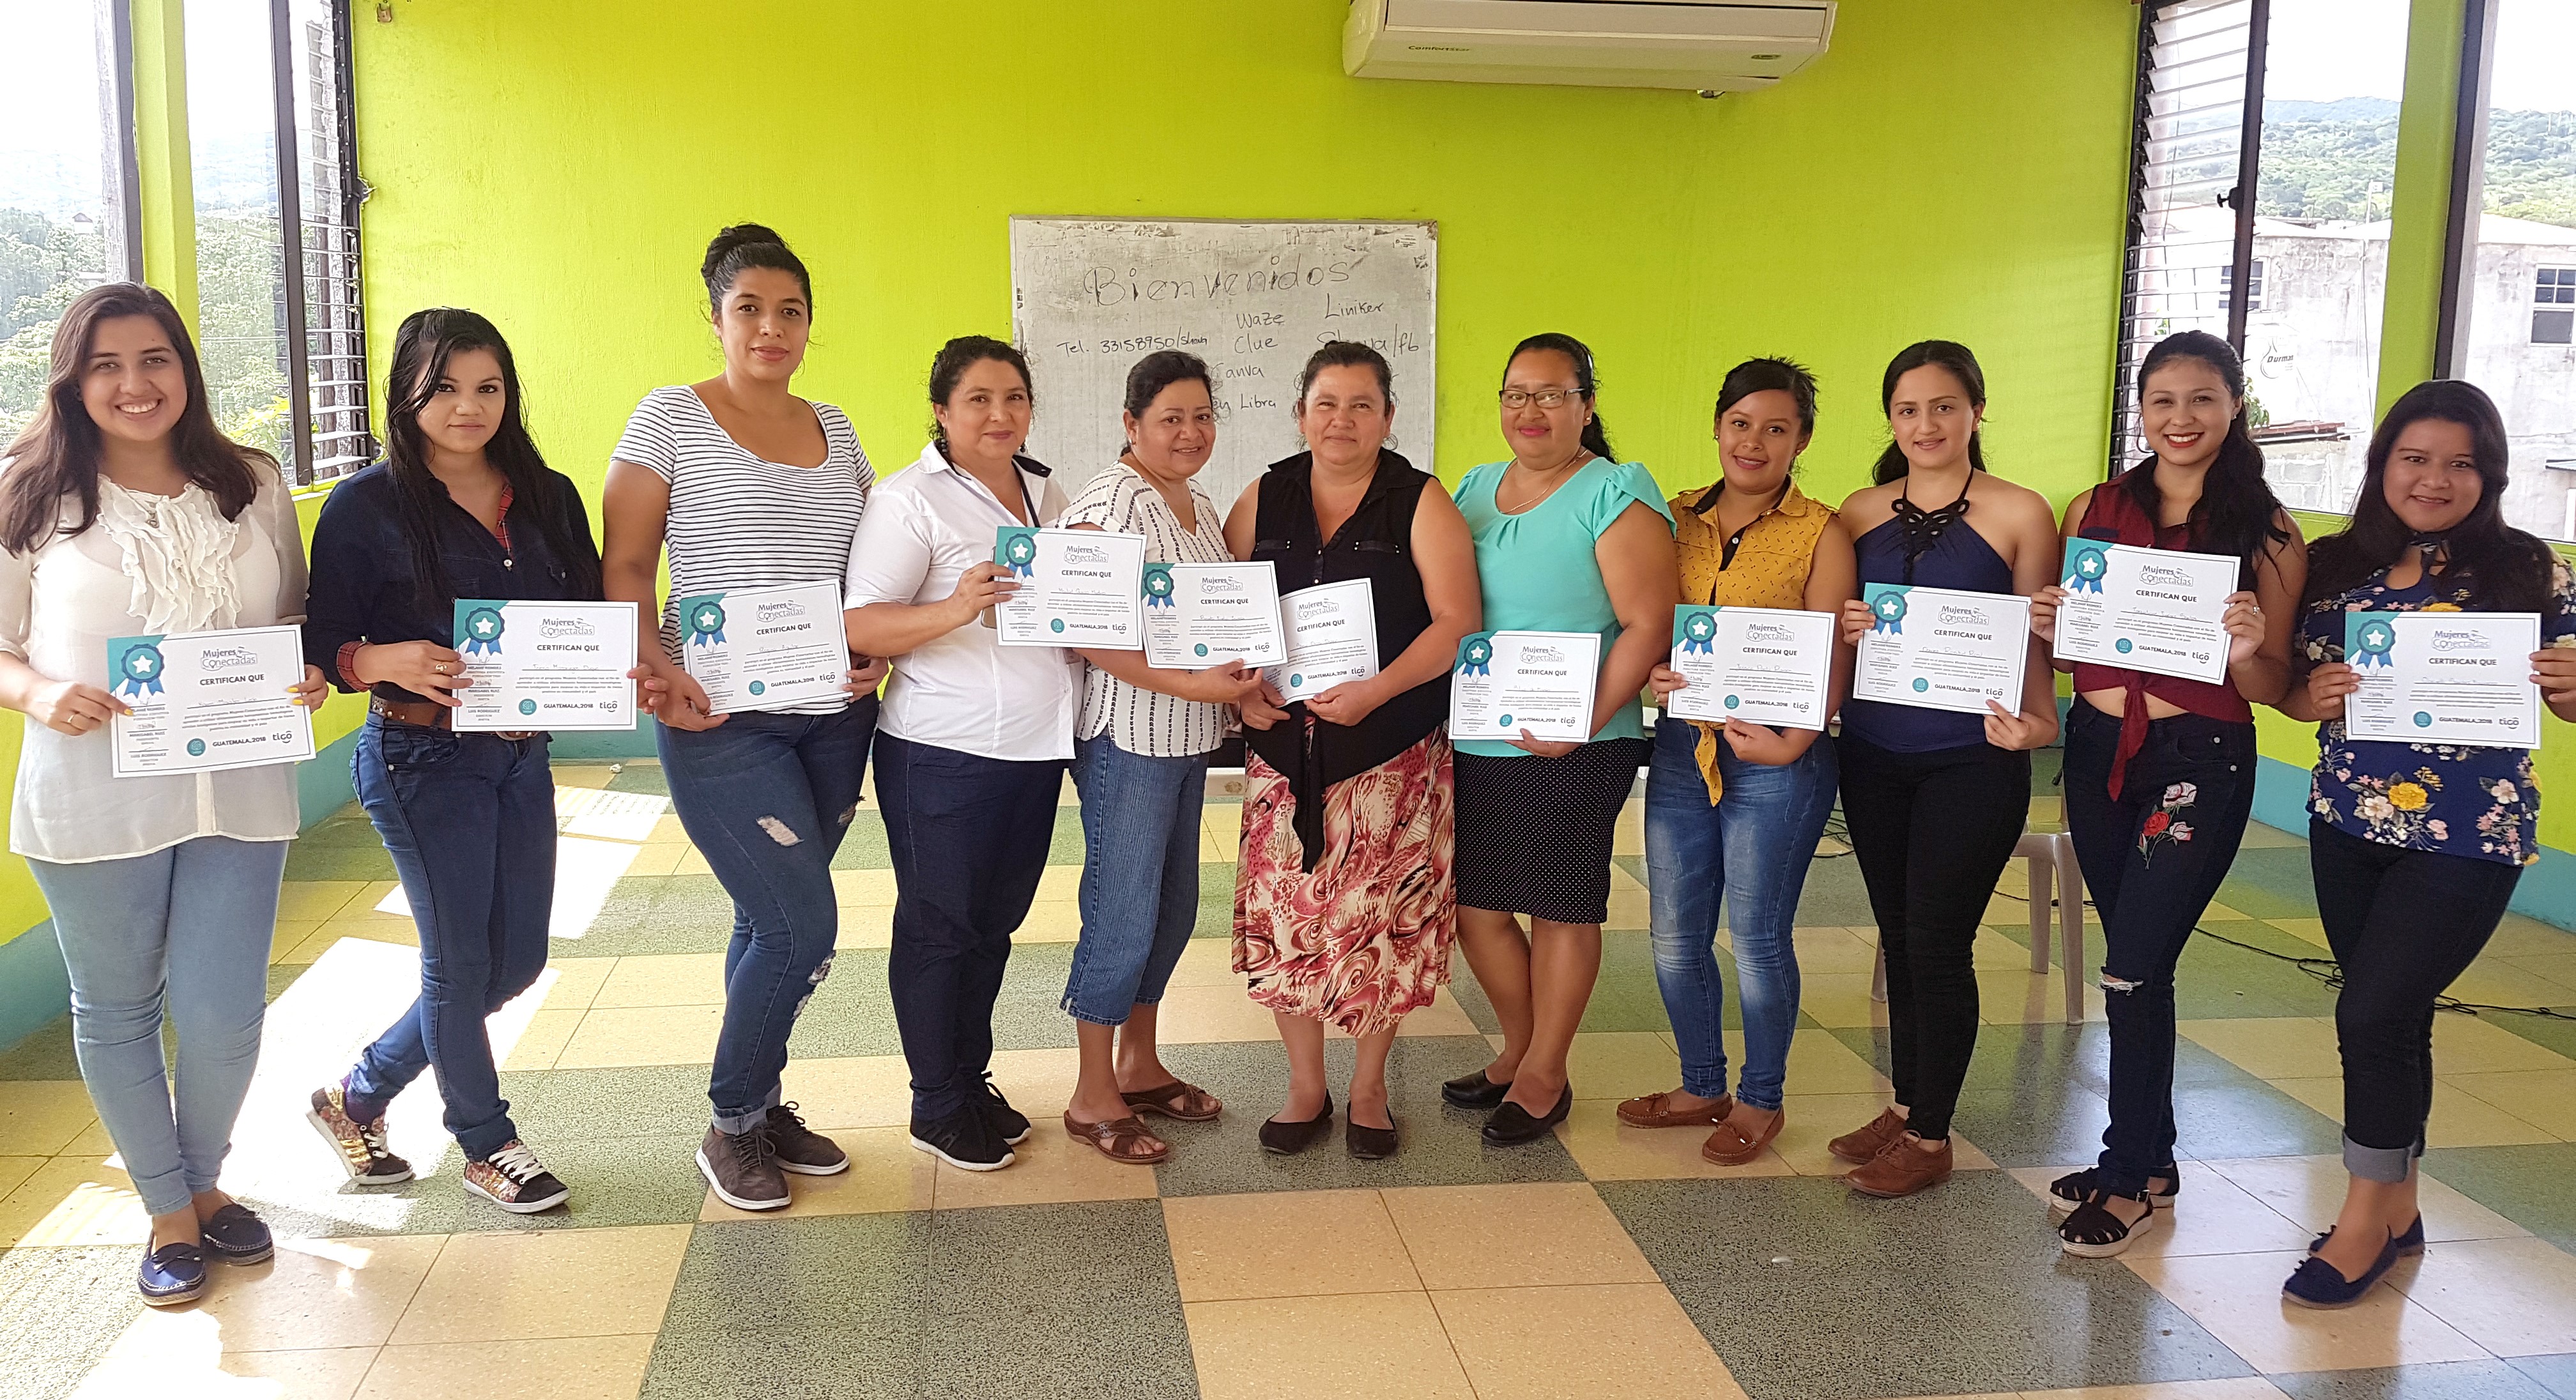 El Programa “Conectadas” fue creado en 2017 y beneficia cada año a más de 160 mil mujeres en Guatemala, Costa Rica, El Salvador, Honduras, Nicaragua, Panamá, Bolivia, Colombia y Paraguay, informó la compañía Tigo. (Foto, Prensa Libre: cortesía).